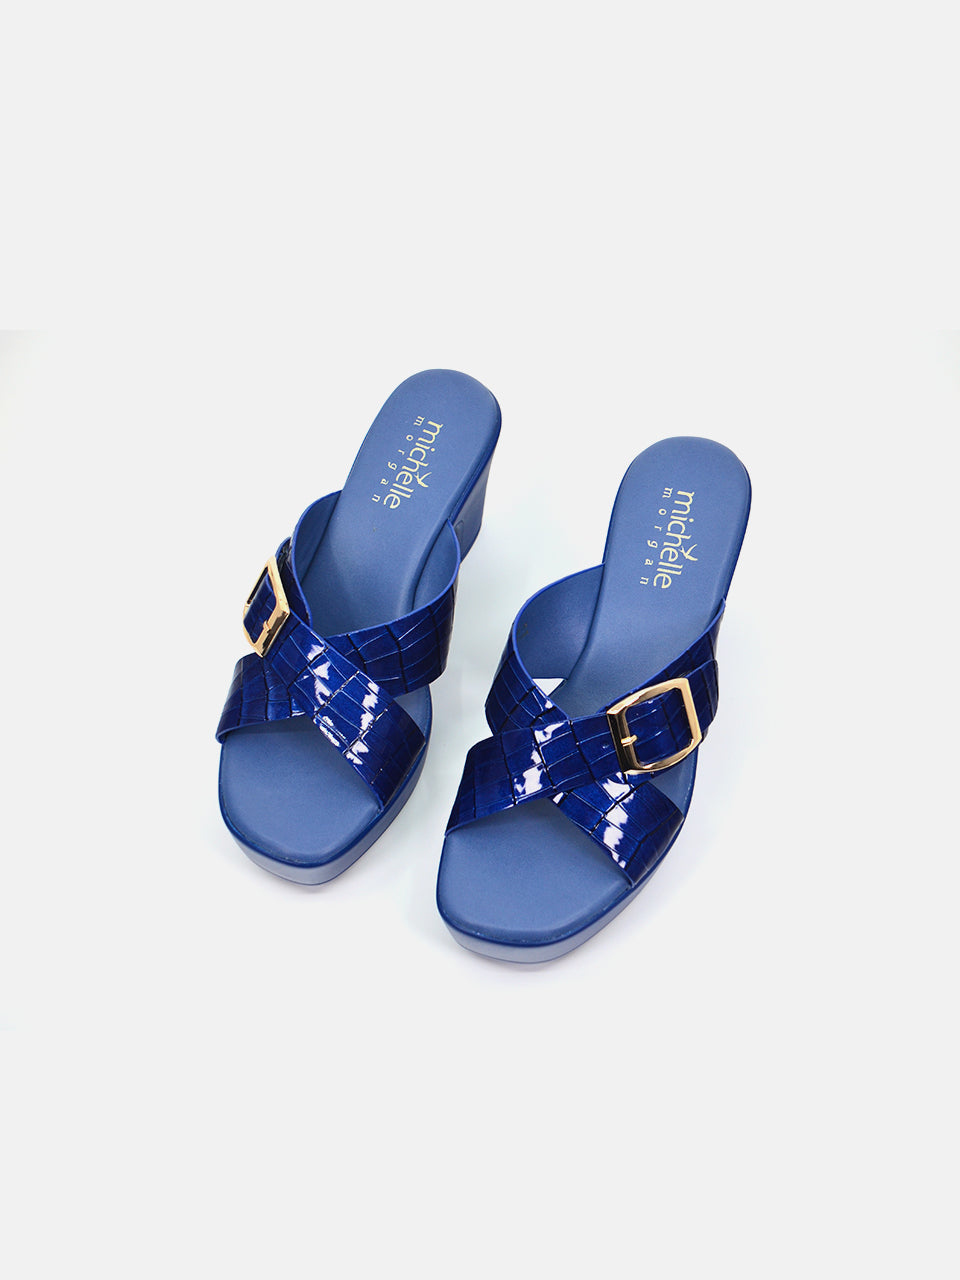 Michelle Morgan 114RJ858 Women's Heeled Sandals #color_Blue